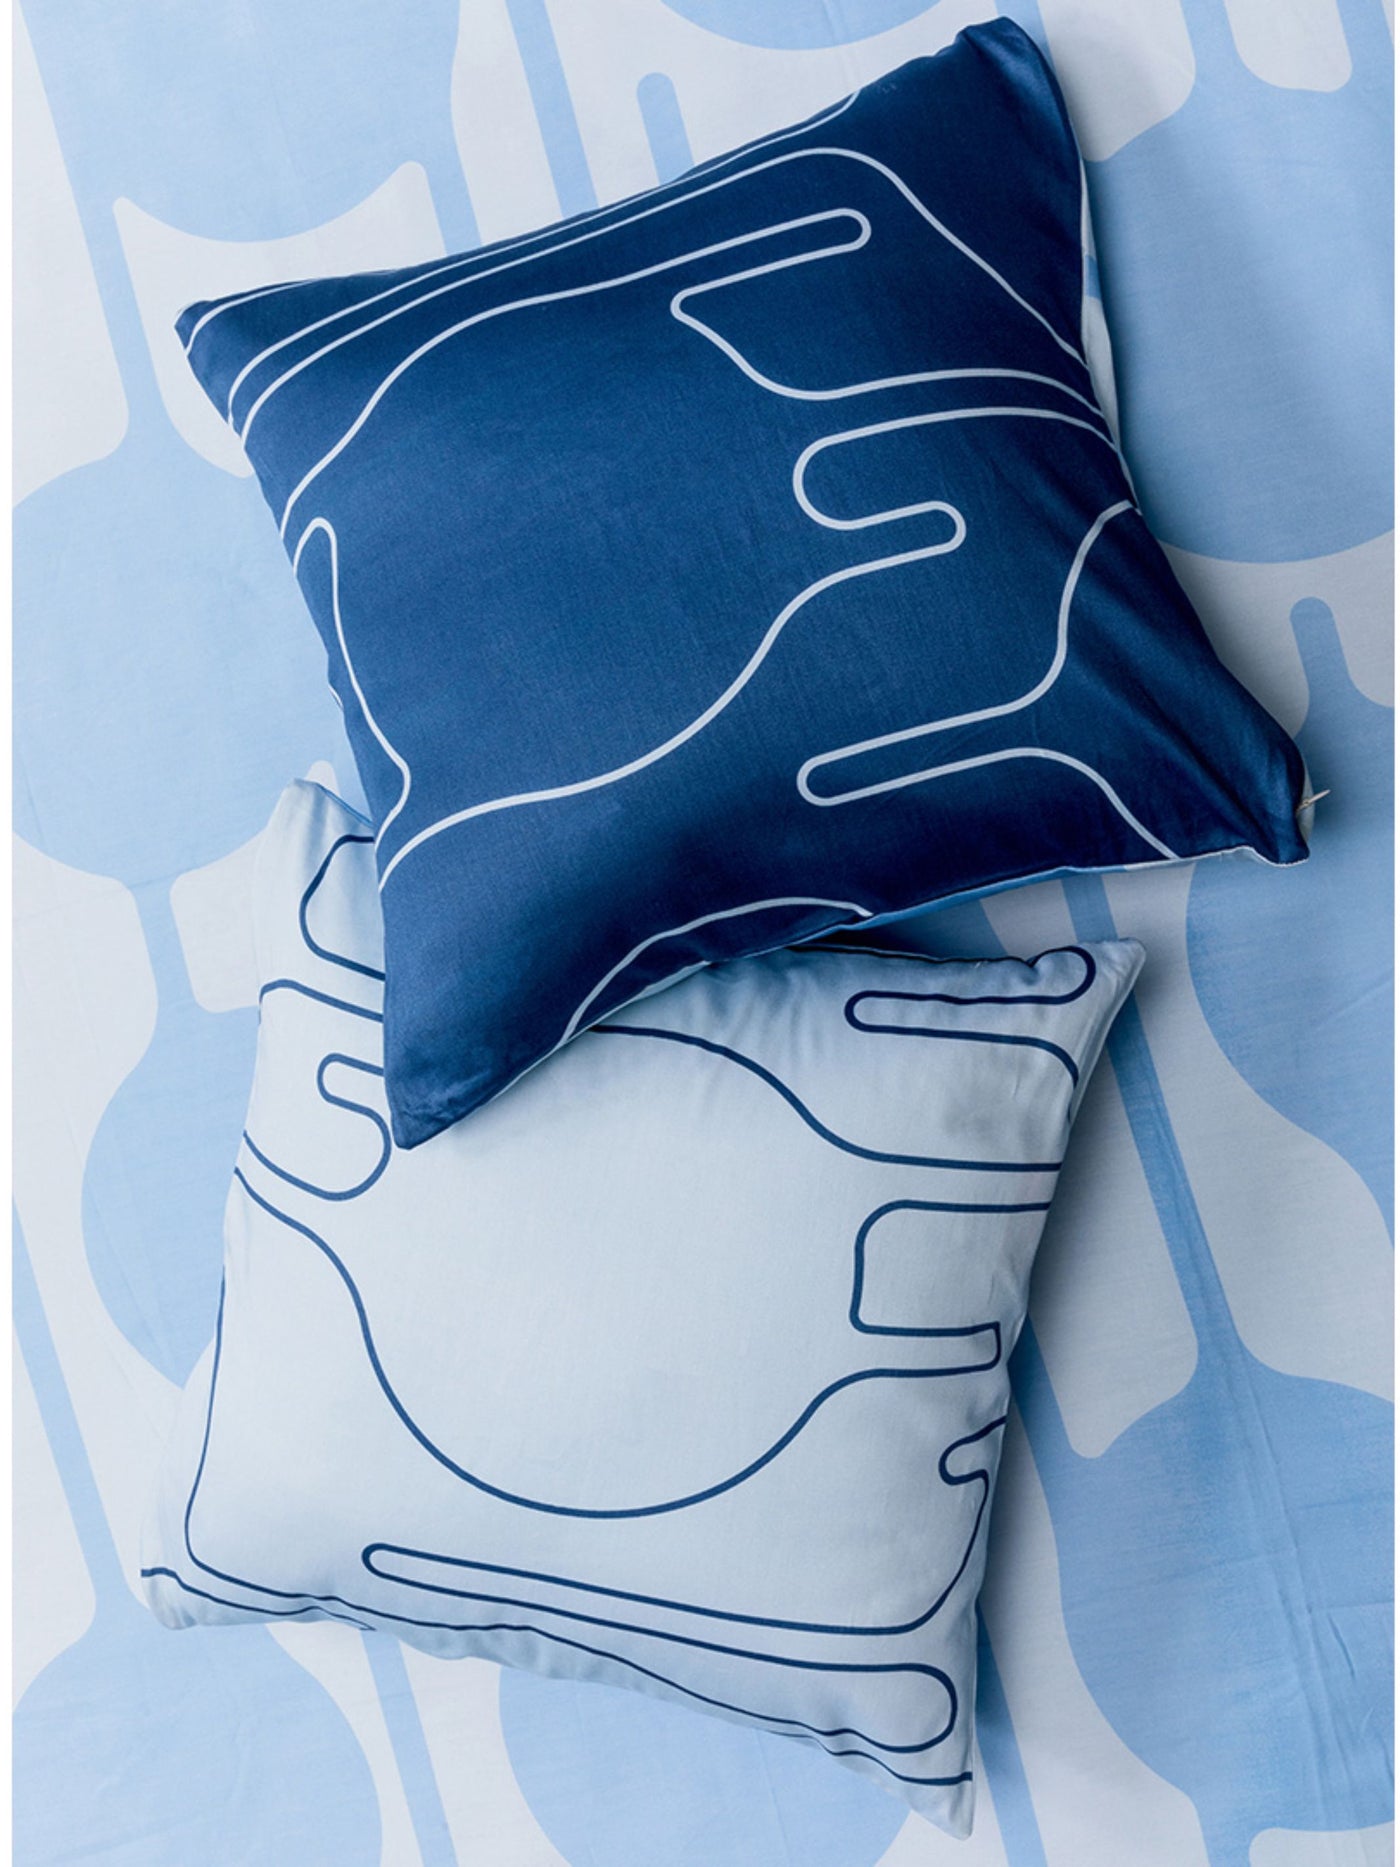 Cushion Cover - The Dripdrip In Blue